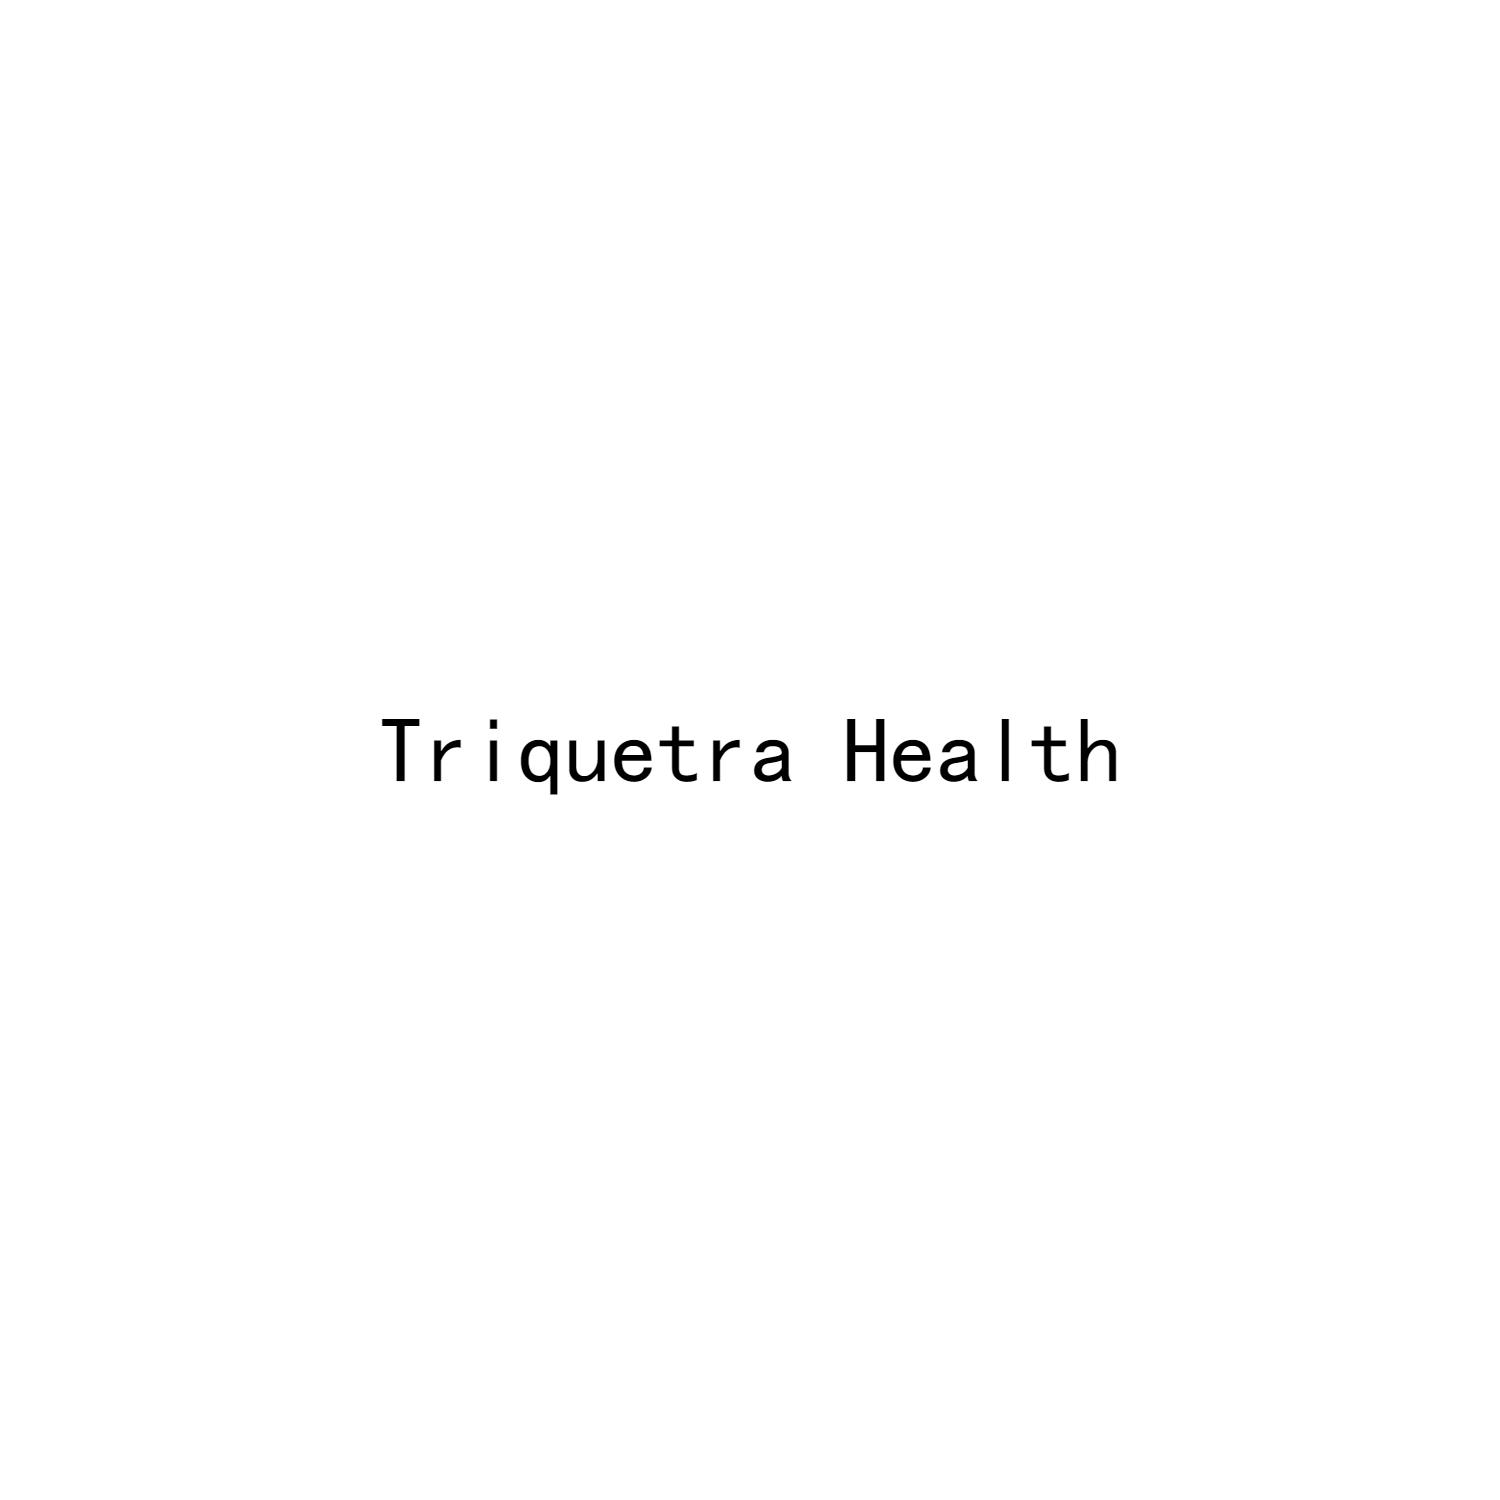 TRIQUETRA HEALTH